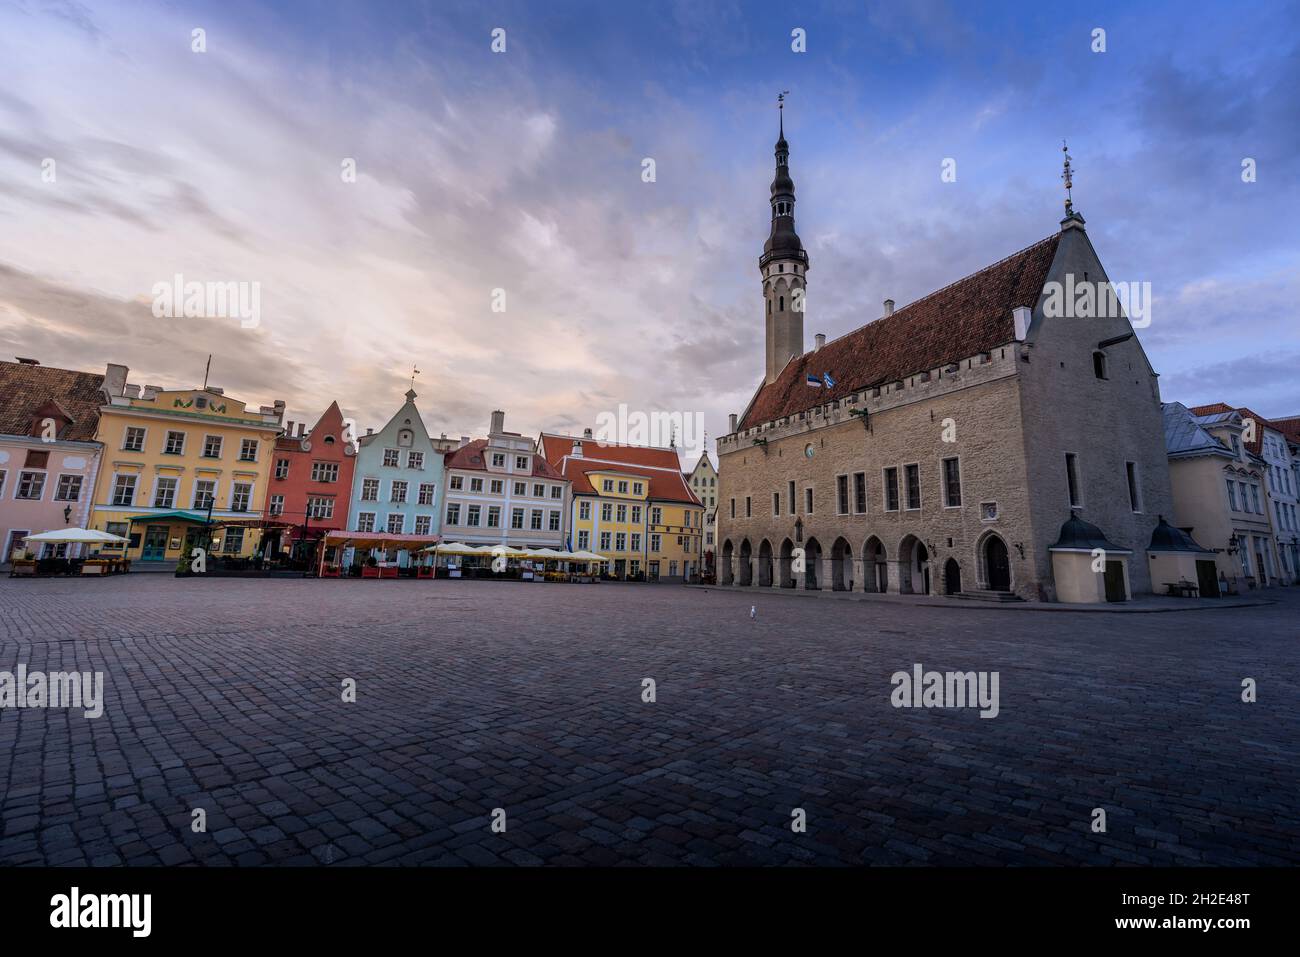 Place de l'hôtel de ville de Tallinn au coucher du soleil - Tallinn, Estonie Banque D'Images